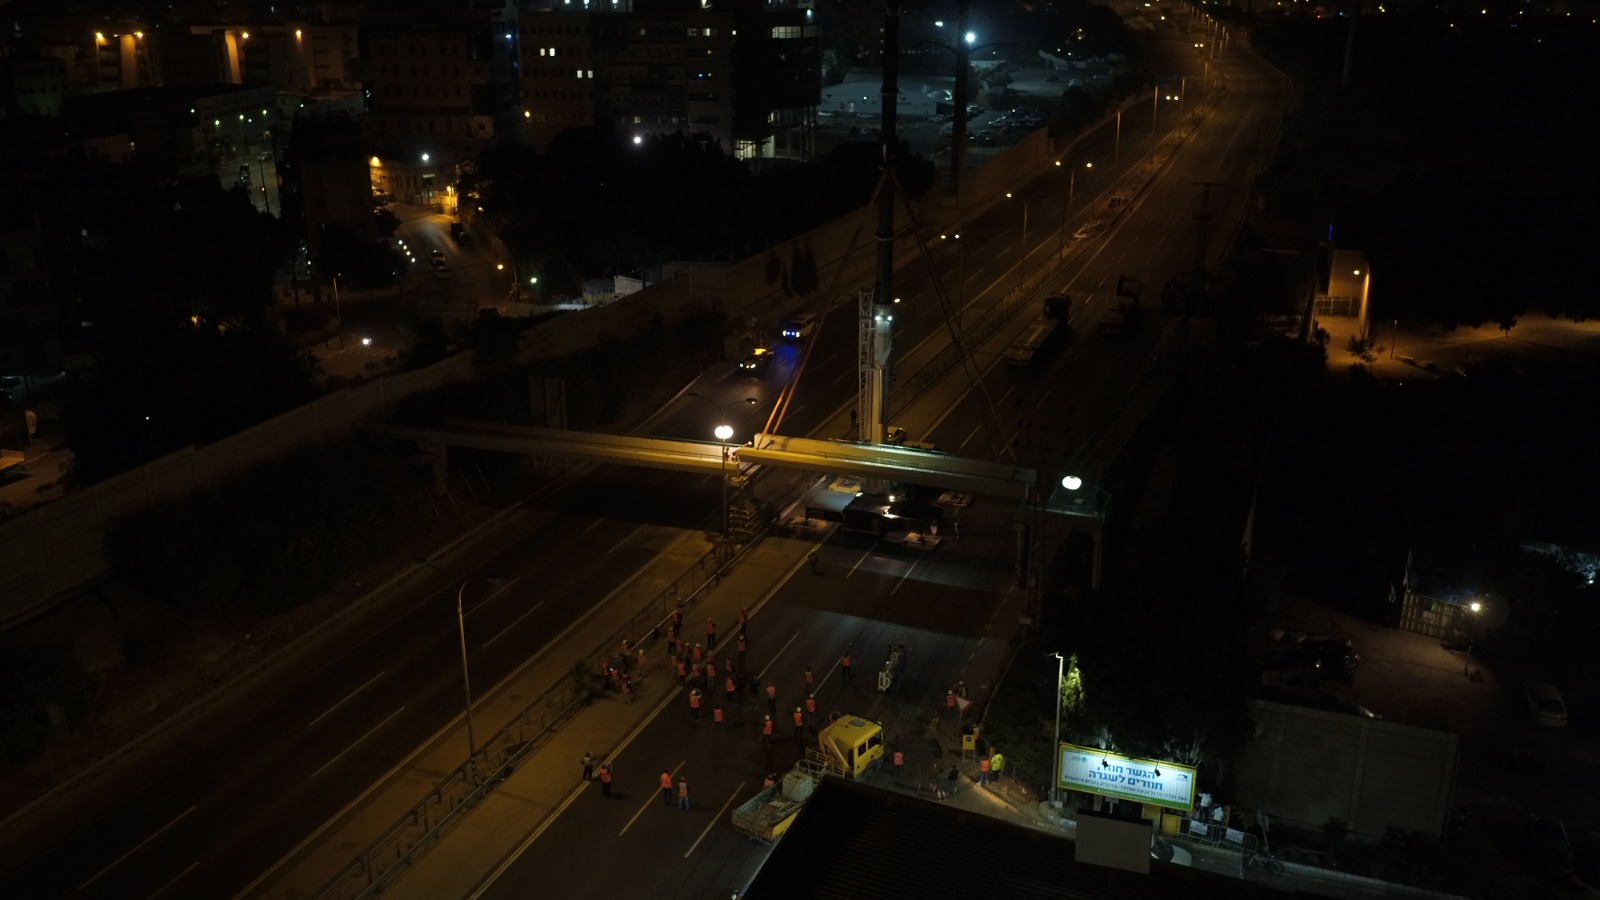 עבודות לשיקום הגשר בגבעת שמואל שנהרס בתאונה קטלנית לפני שנה (קרדיט: נתיבי ישראל)